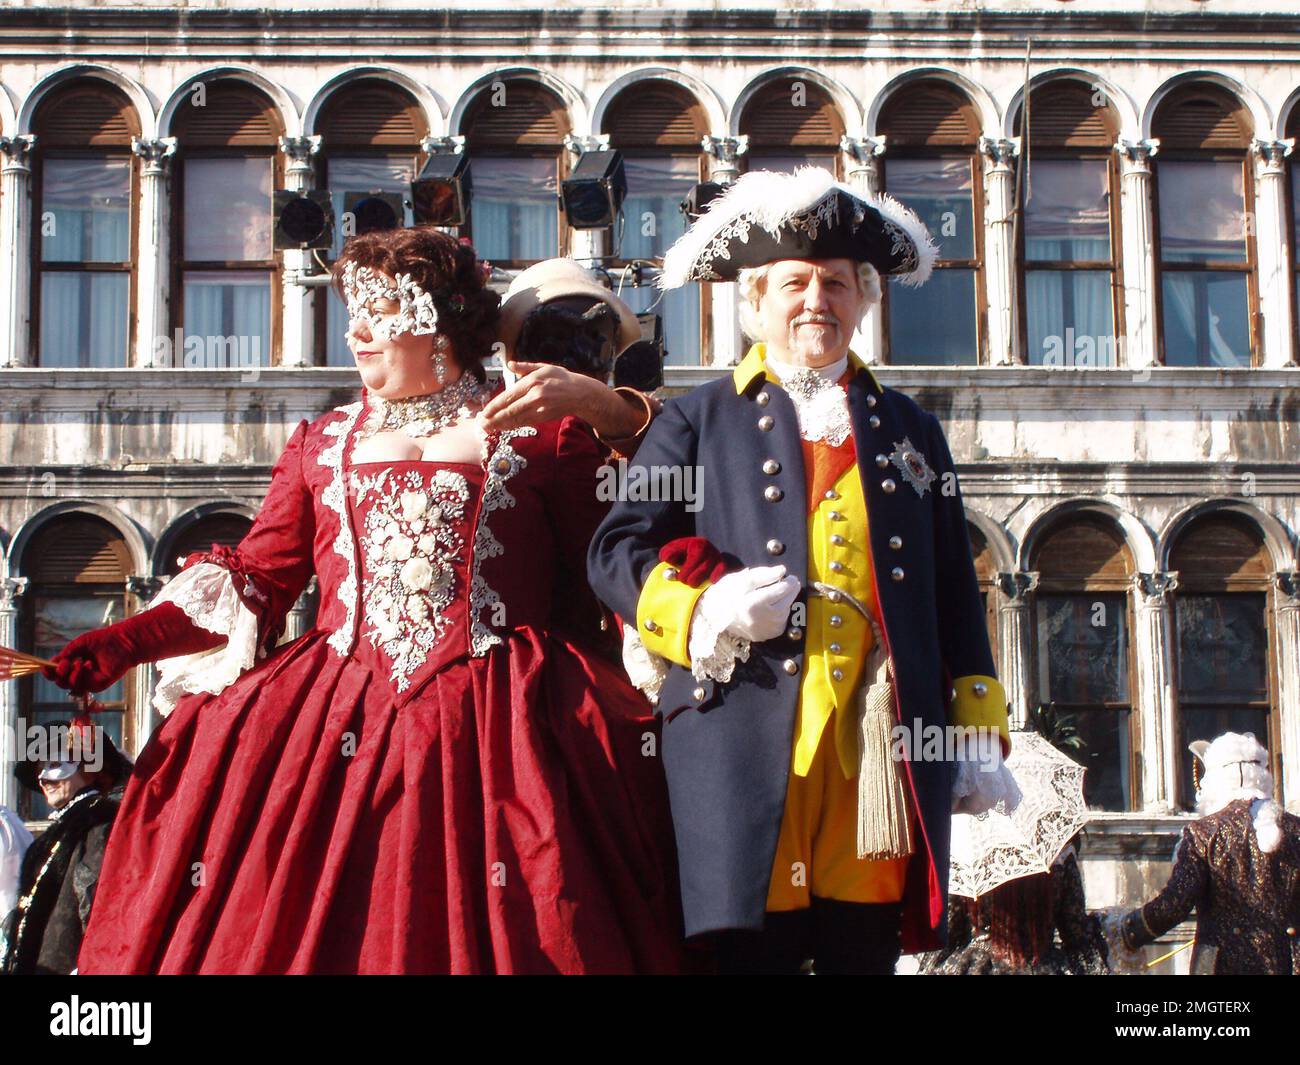 Coppia di mezza età nella settecentesca sfilata di costumi veneziani in Piazza San Marco. Venezia, Italia - 10 febbraio 2008 Foto Stock